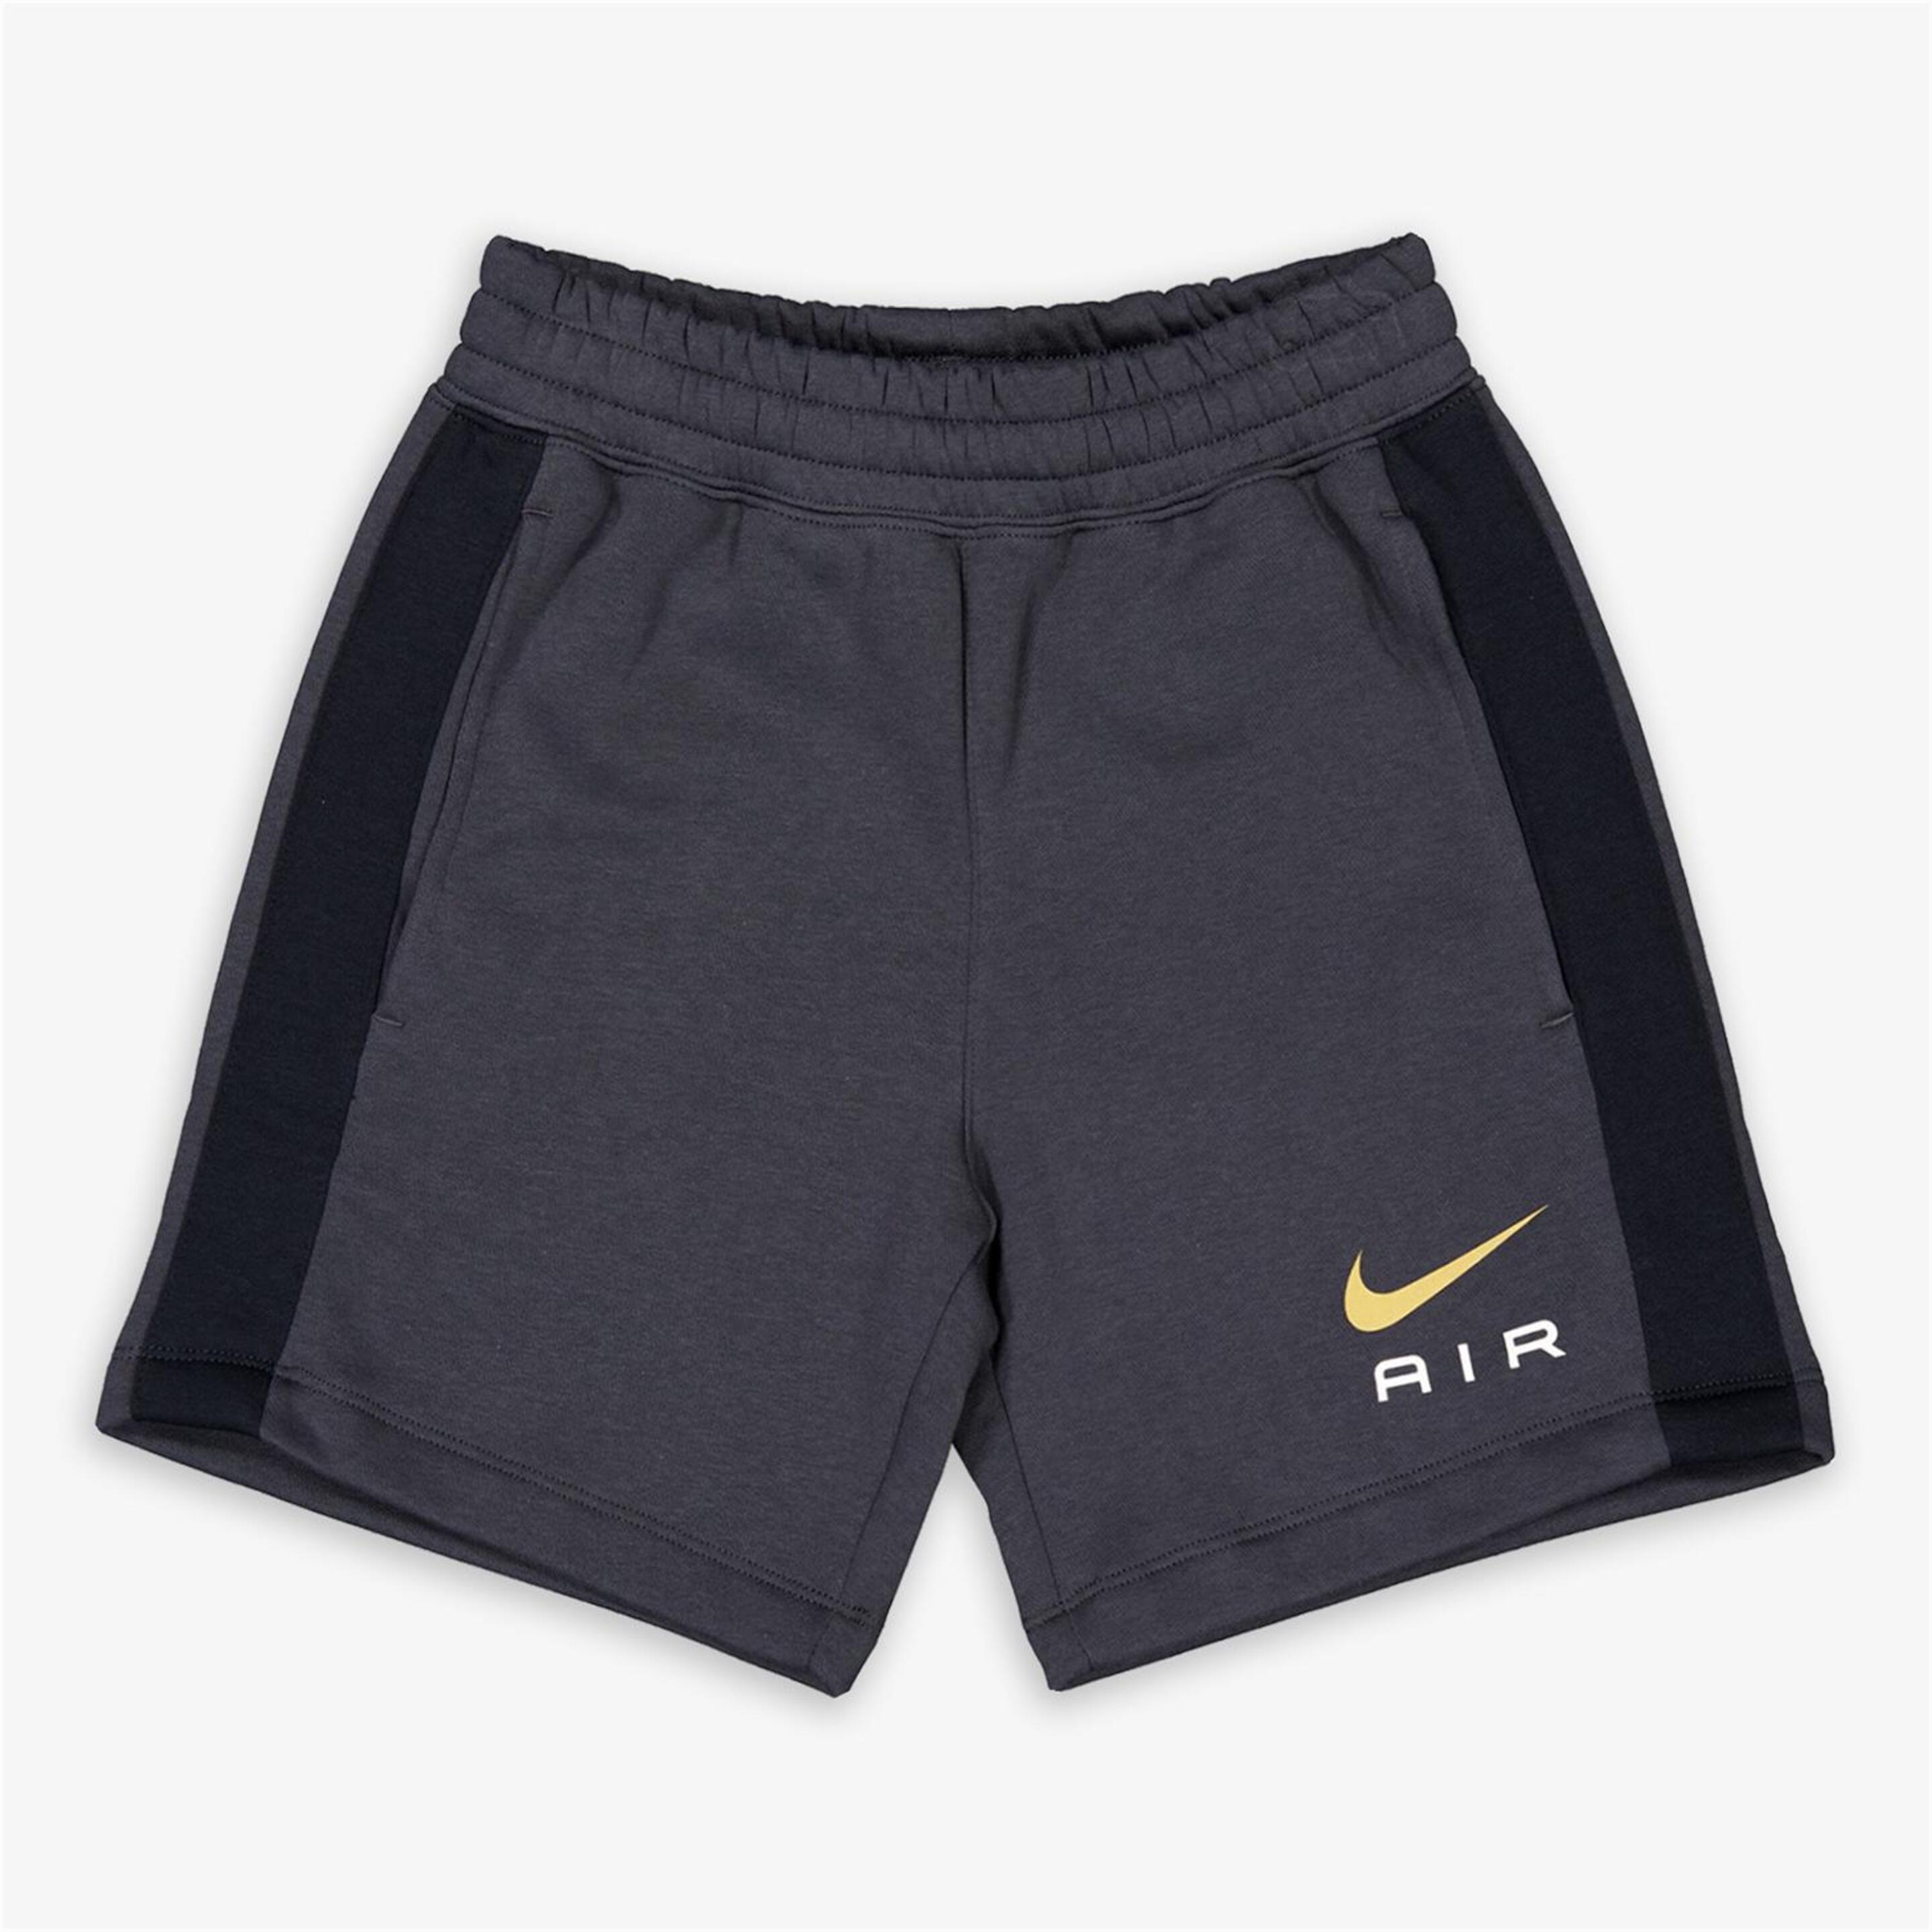 Pantalón Nike - gris - Bermuda Niño